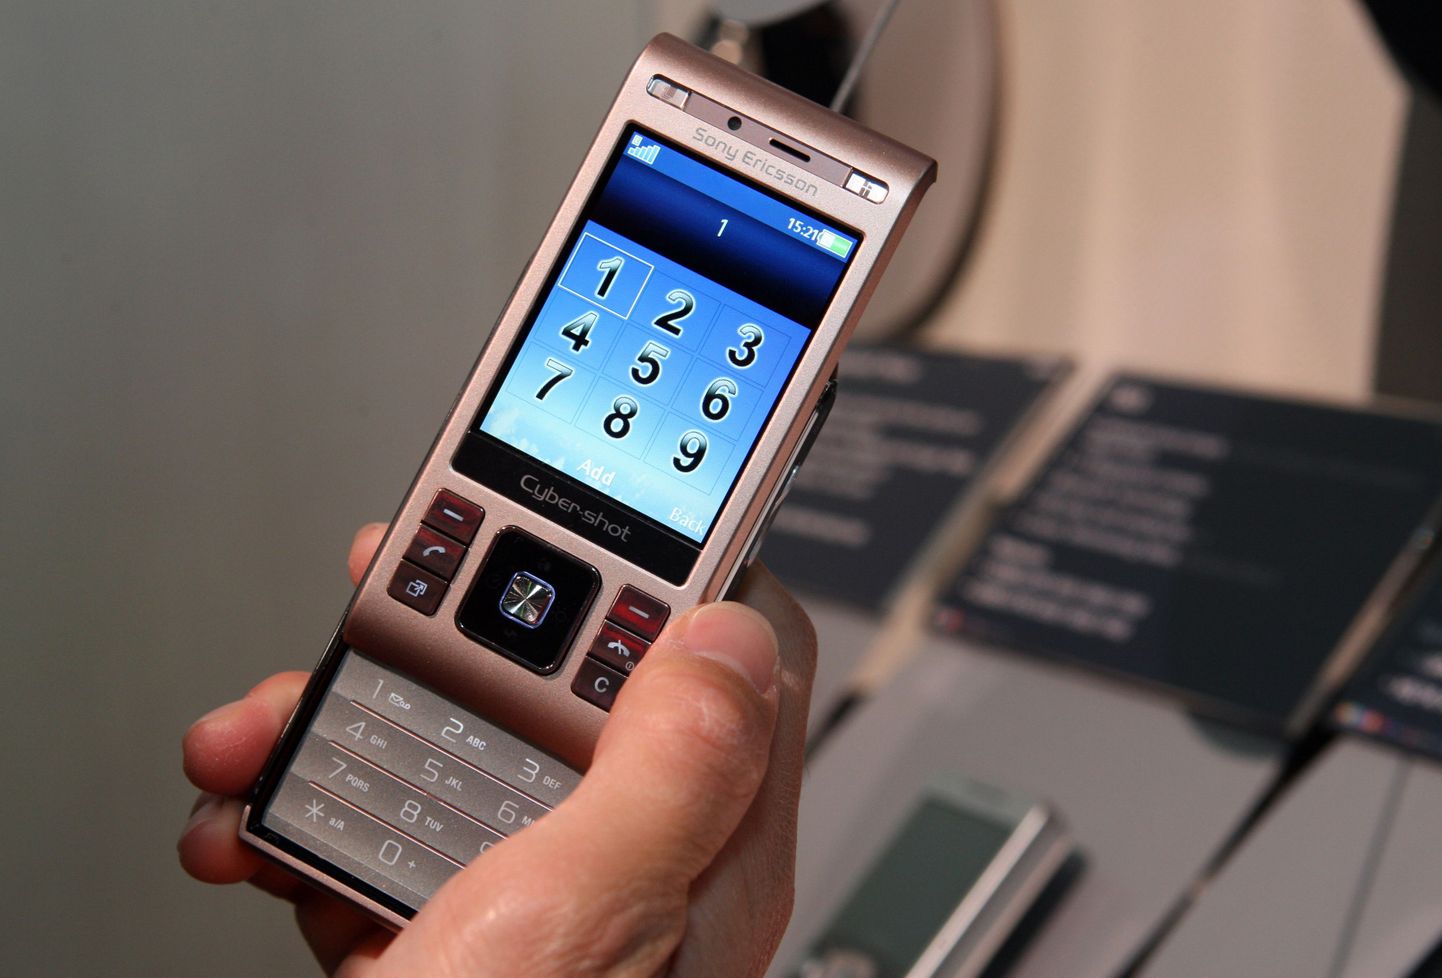 Sony Ericsson Cybershot C905.